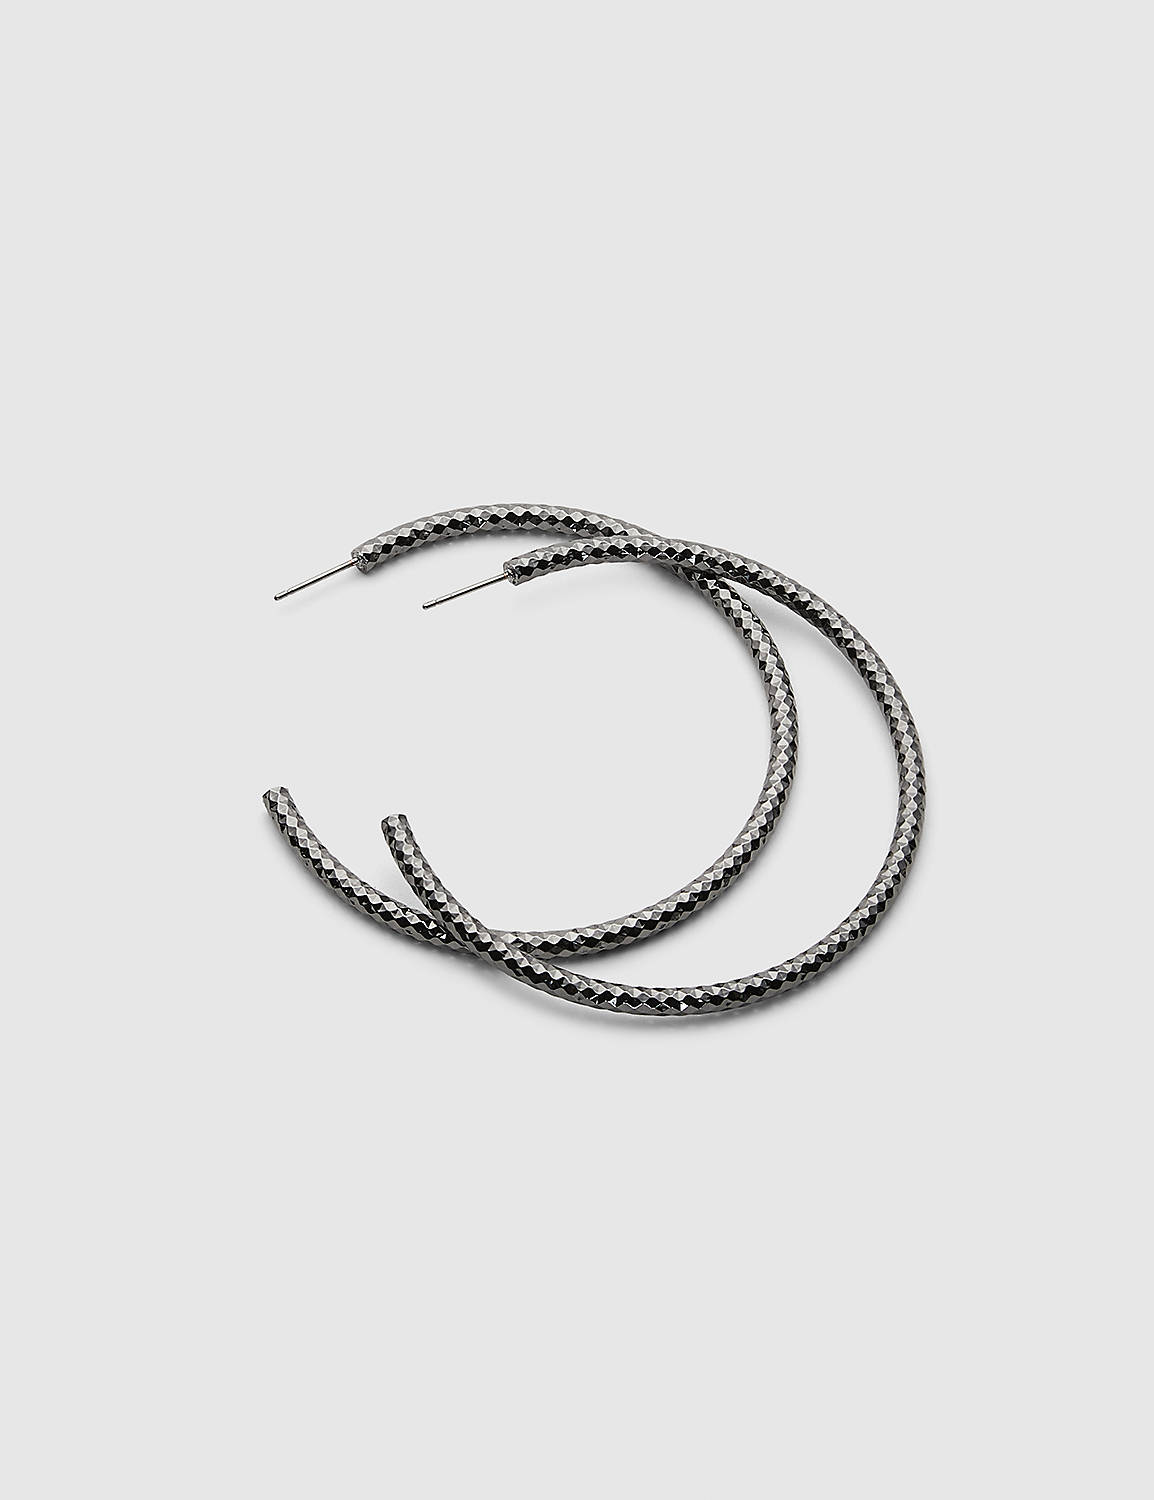 Hematite Textured Hoop Earrings Product Image 1